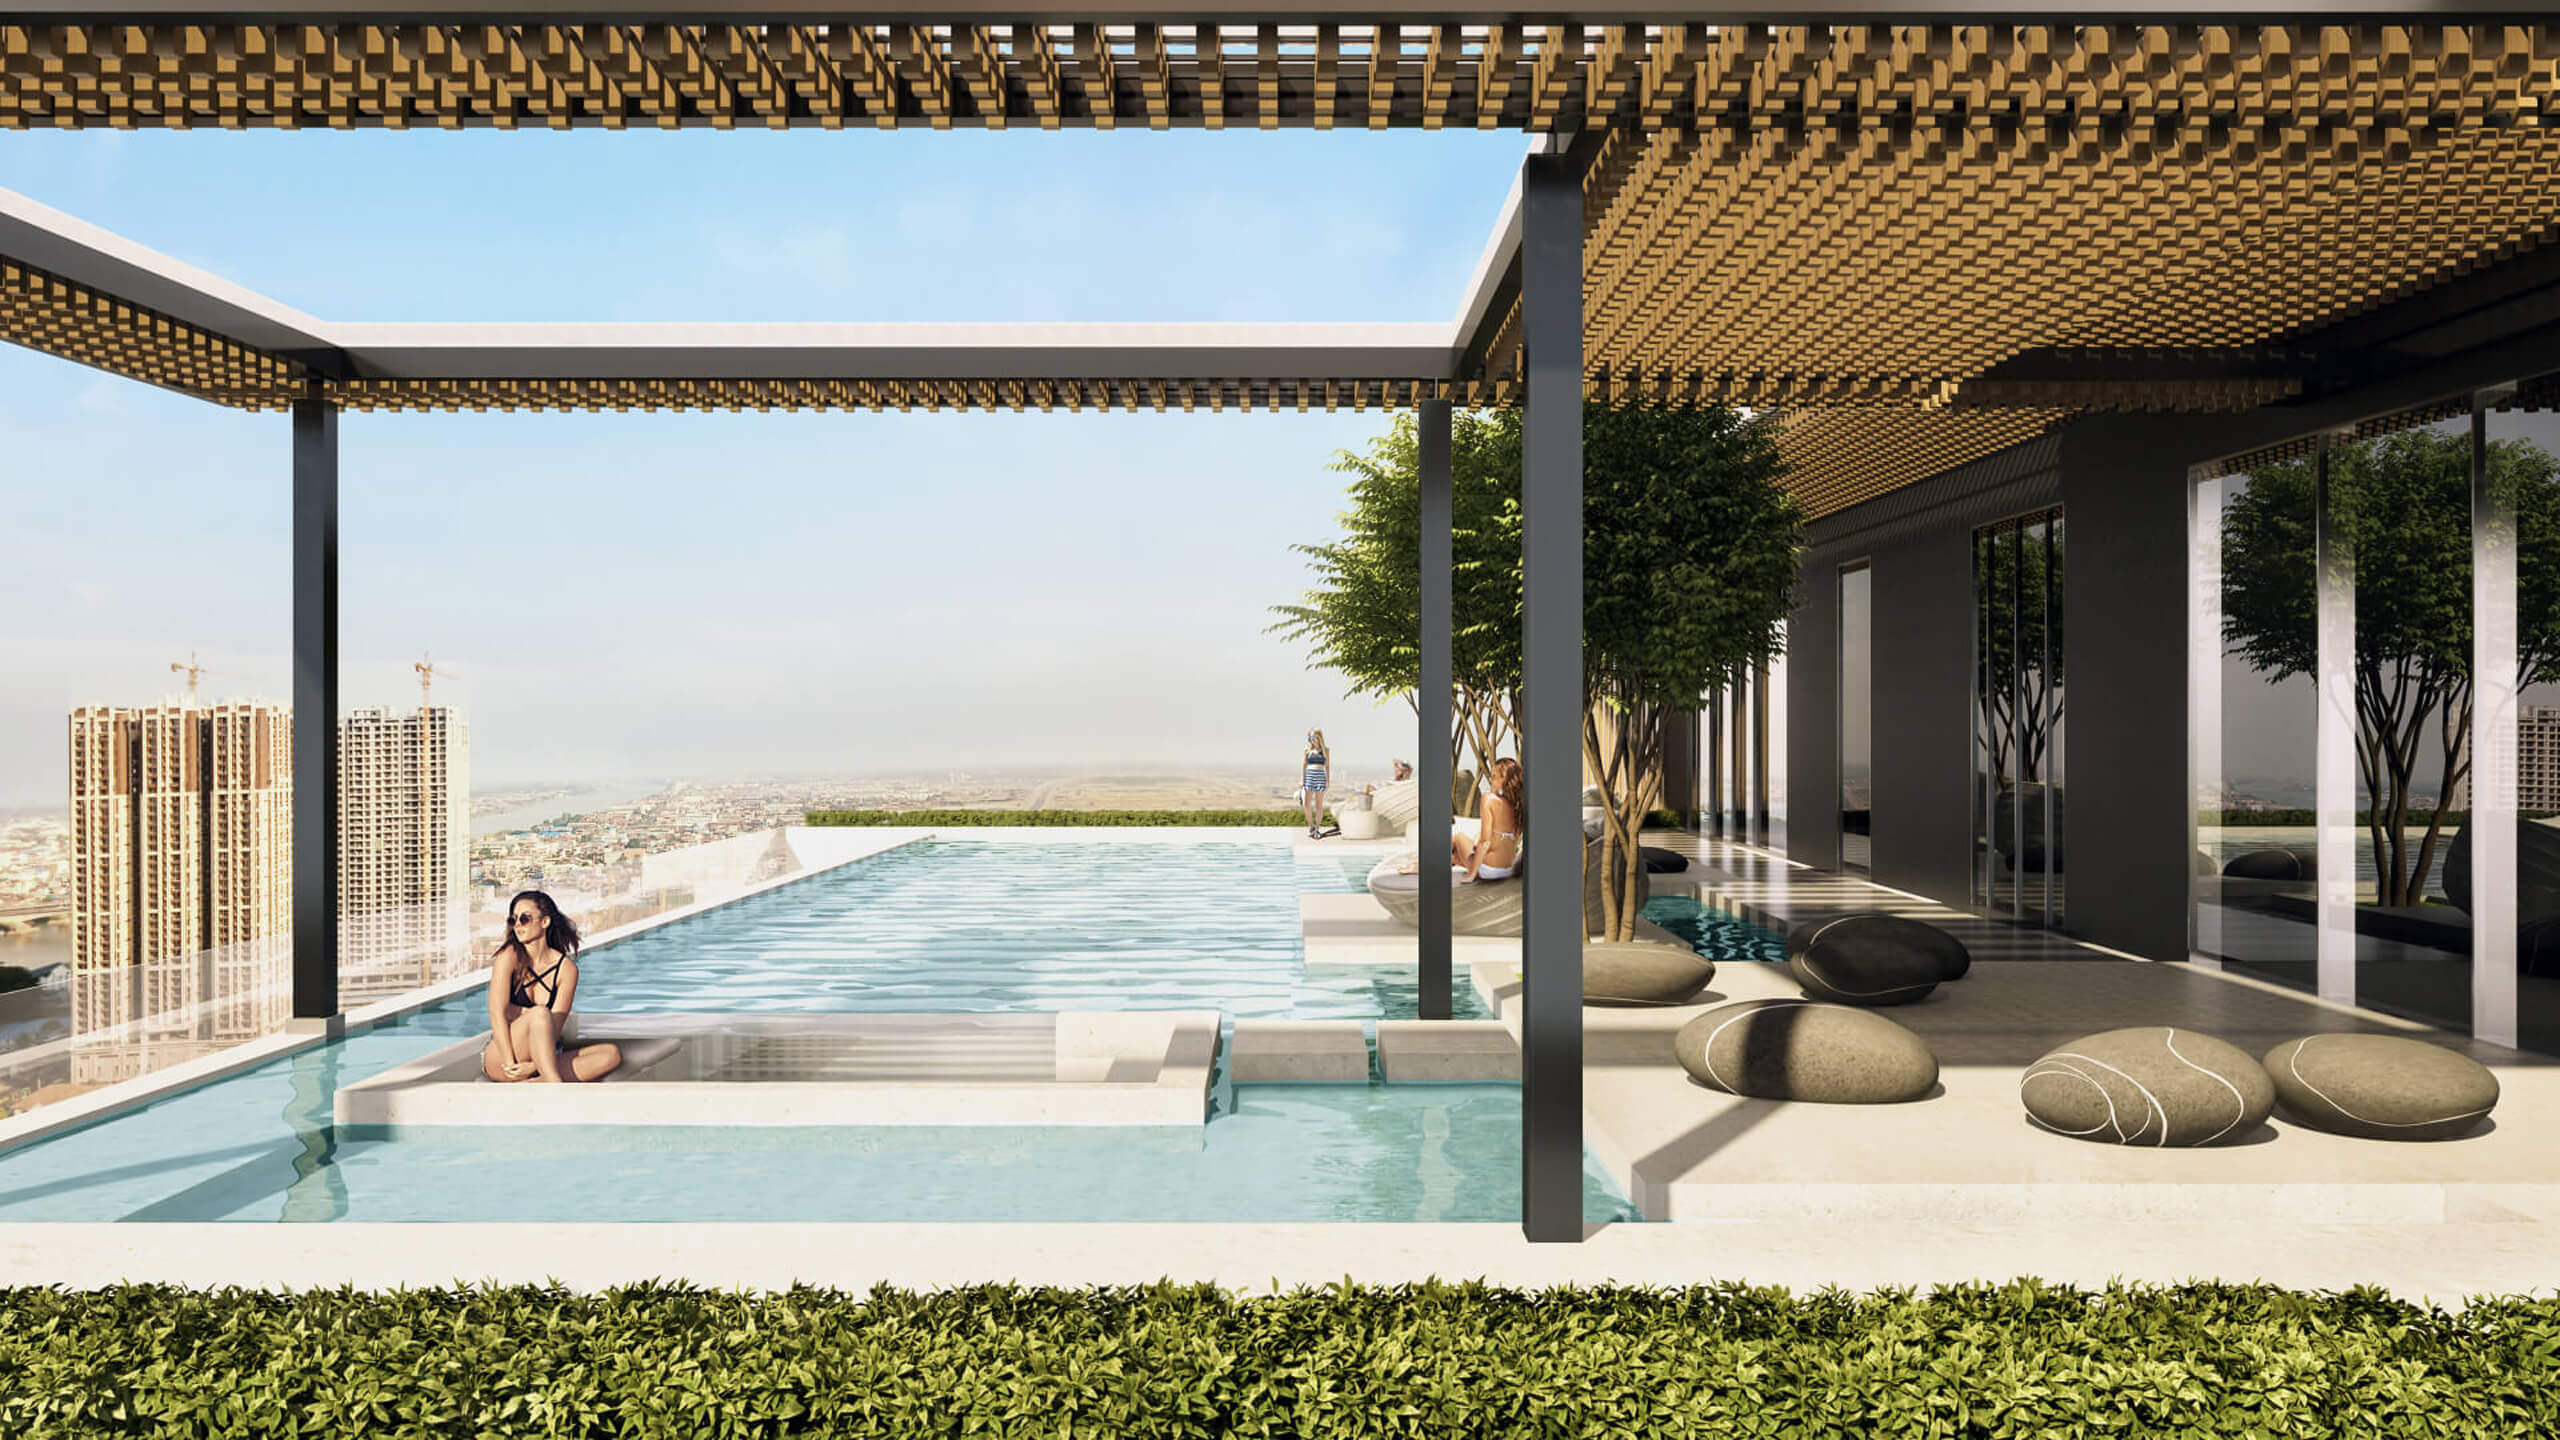 3D Rendering of Hotel Terrace Pool